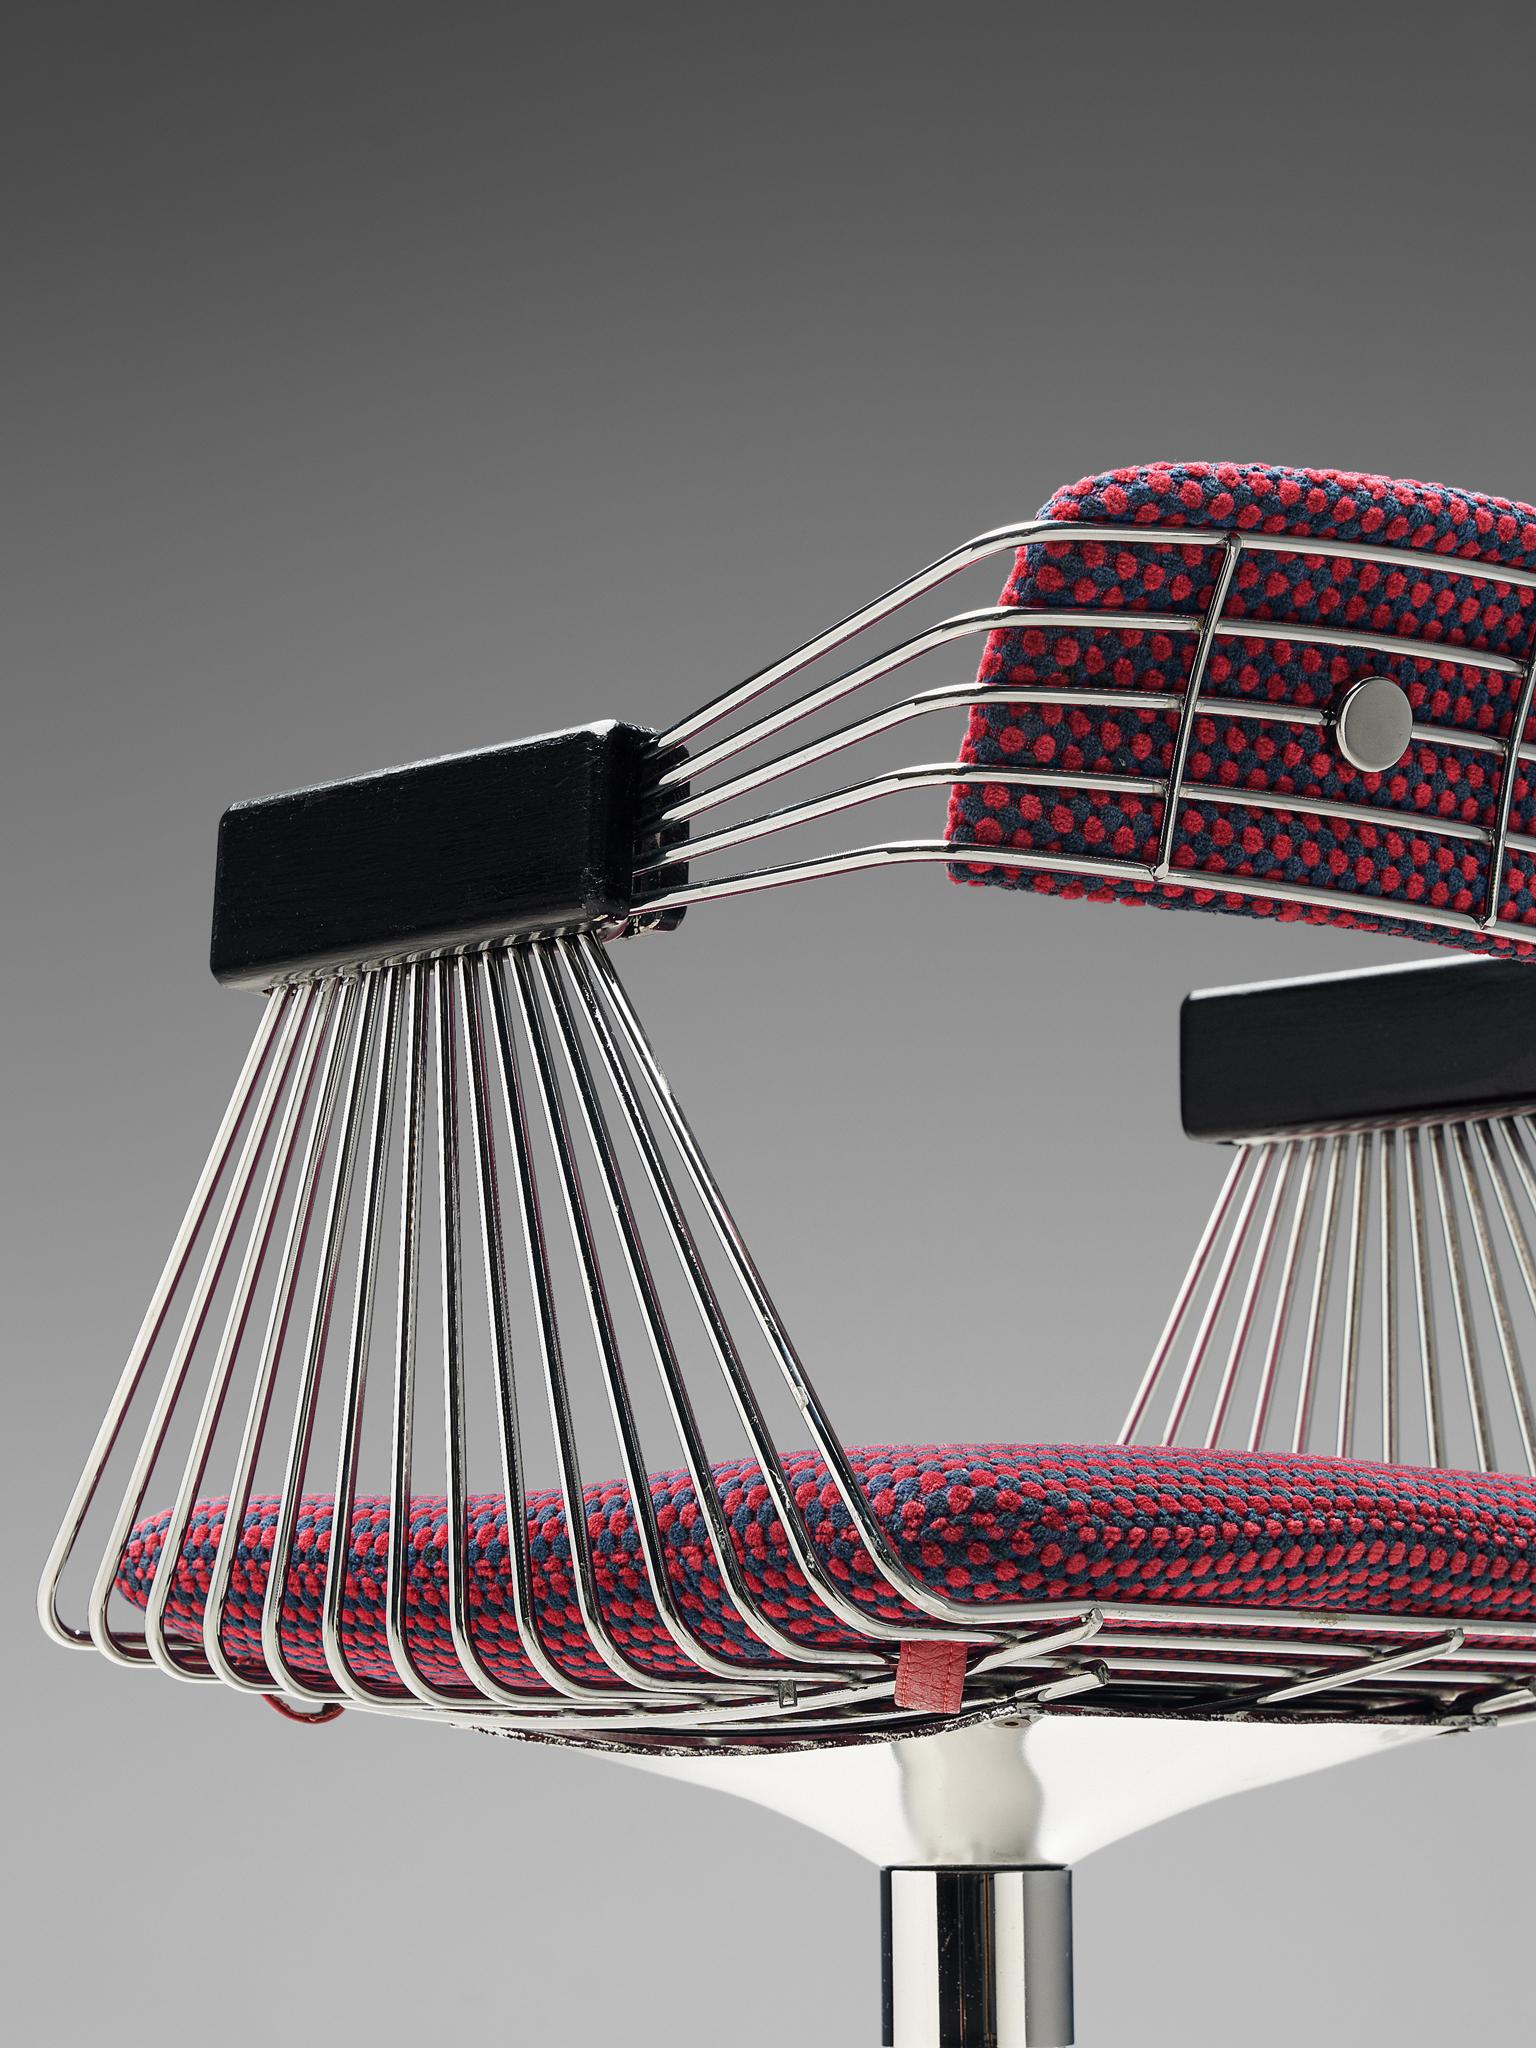 Rudi Verelst Twelve Chromed 'Delta' Chairs 2